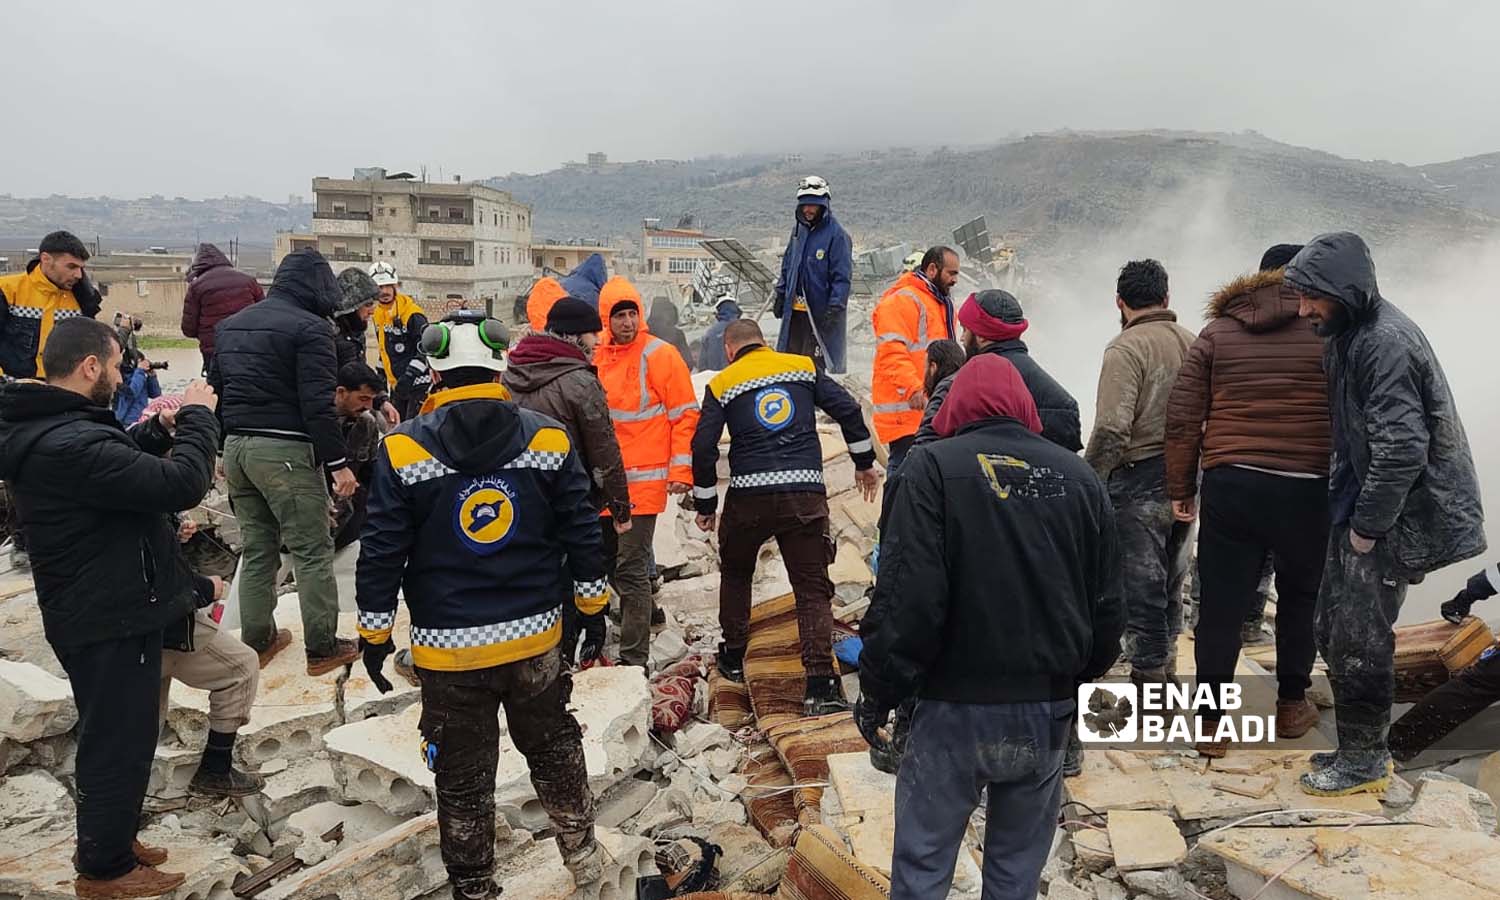 متطوعون في "الدفاع المدني السوري" يحاولون إنقاذ المصابين وانتشال الضحايا تحت الركام في سرمدا إثر زلزال ضرب مناطق شمال غربي سوريا- 6 شباط 2023 (عنب بلدي/ إياد عبد الجواد)